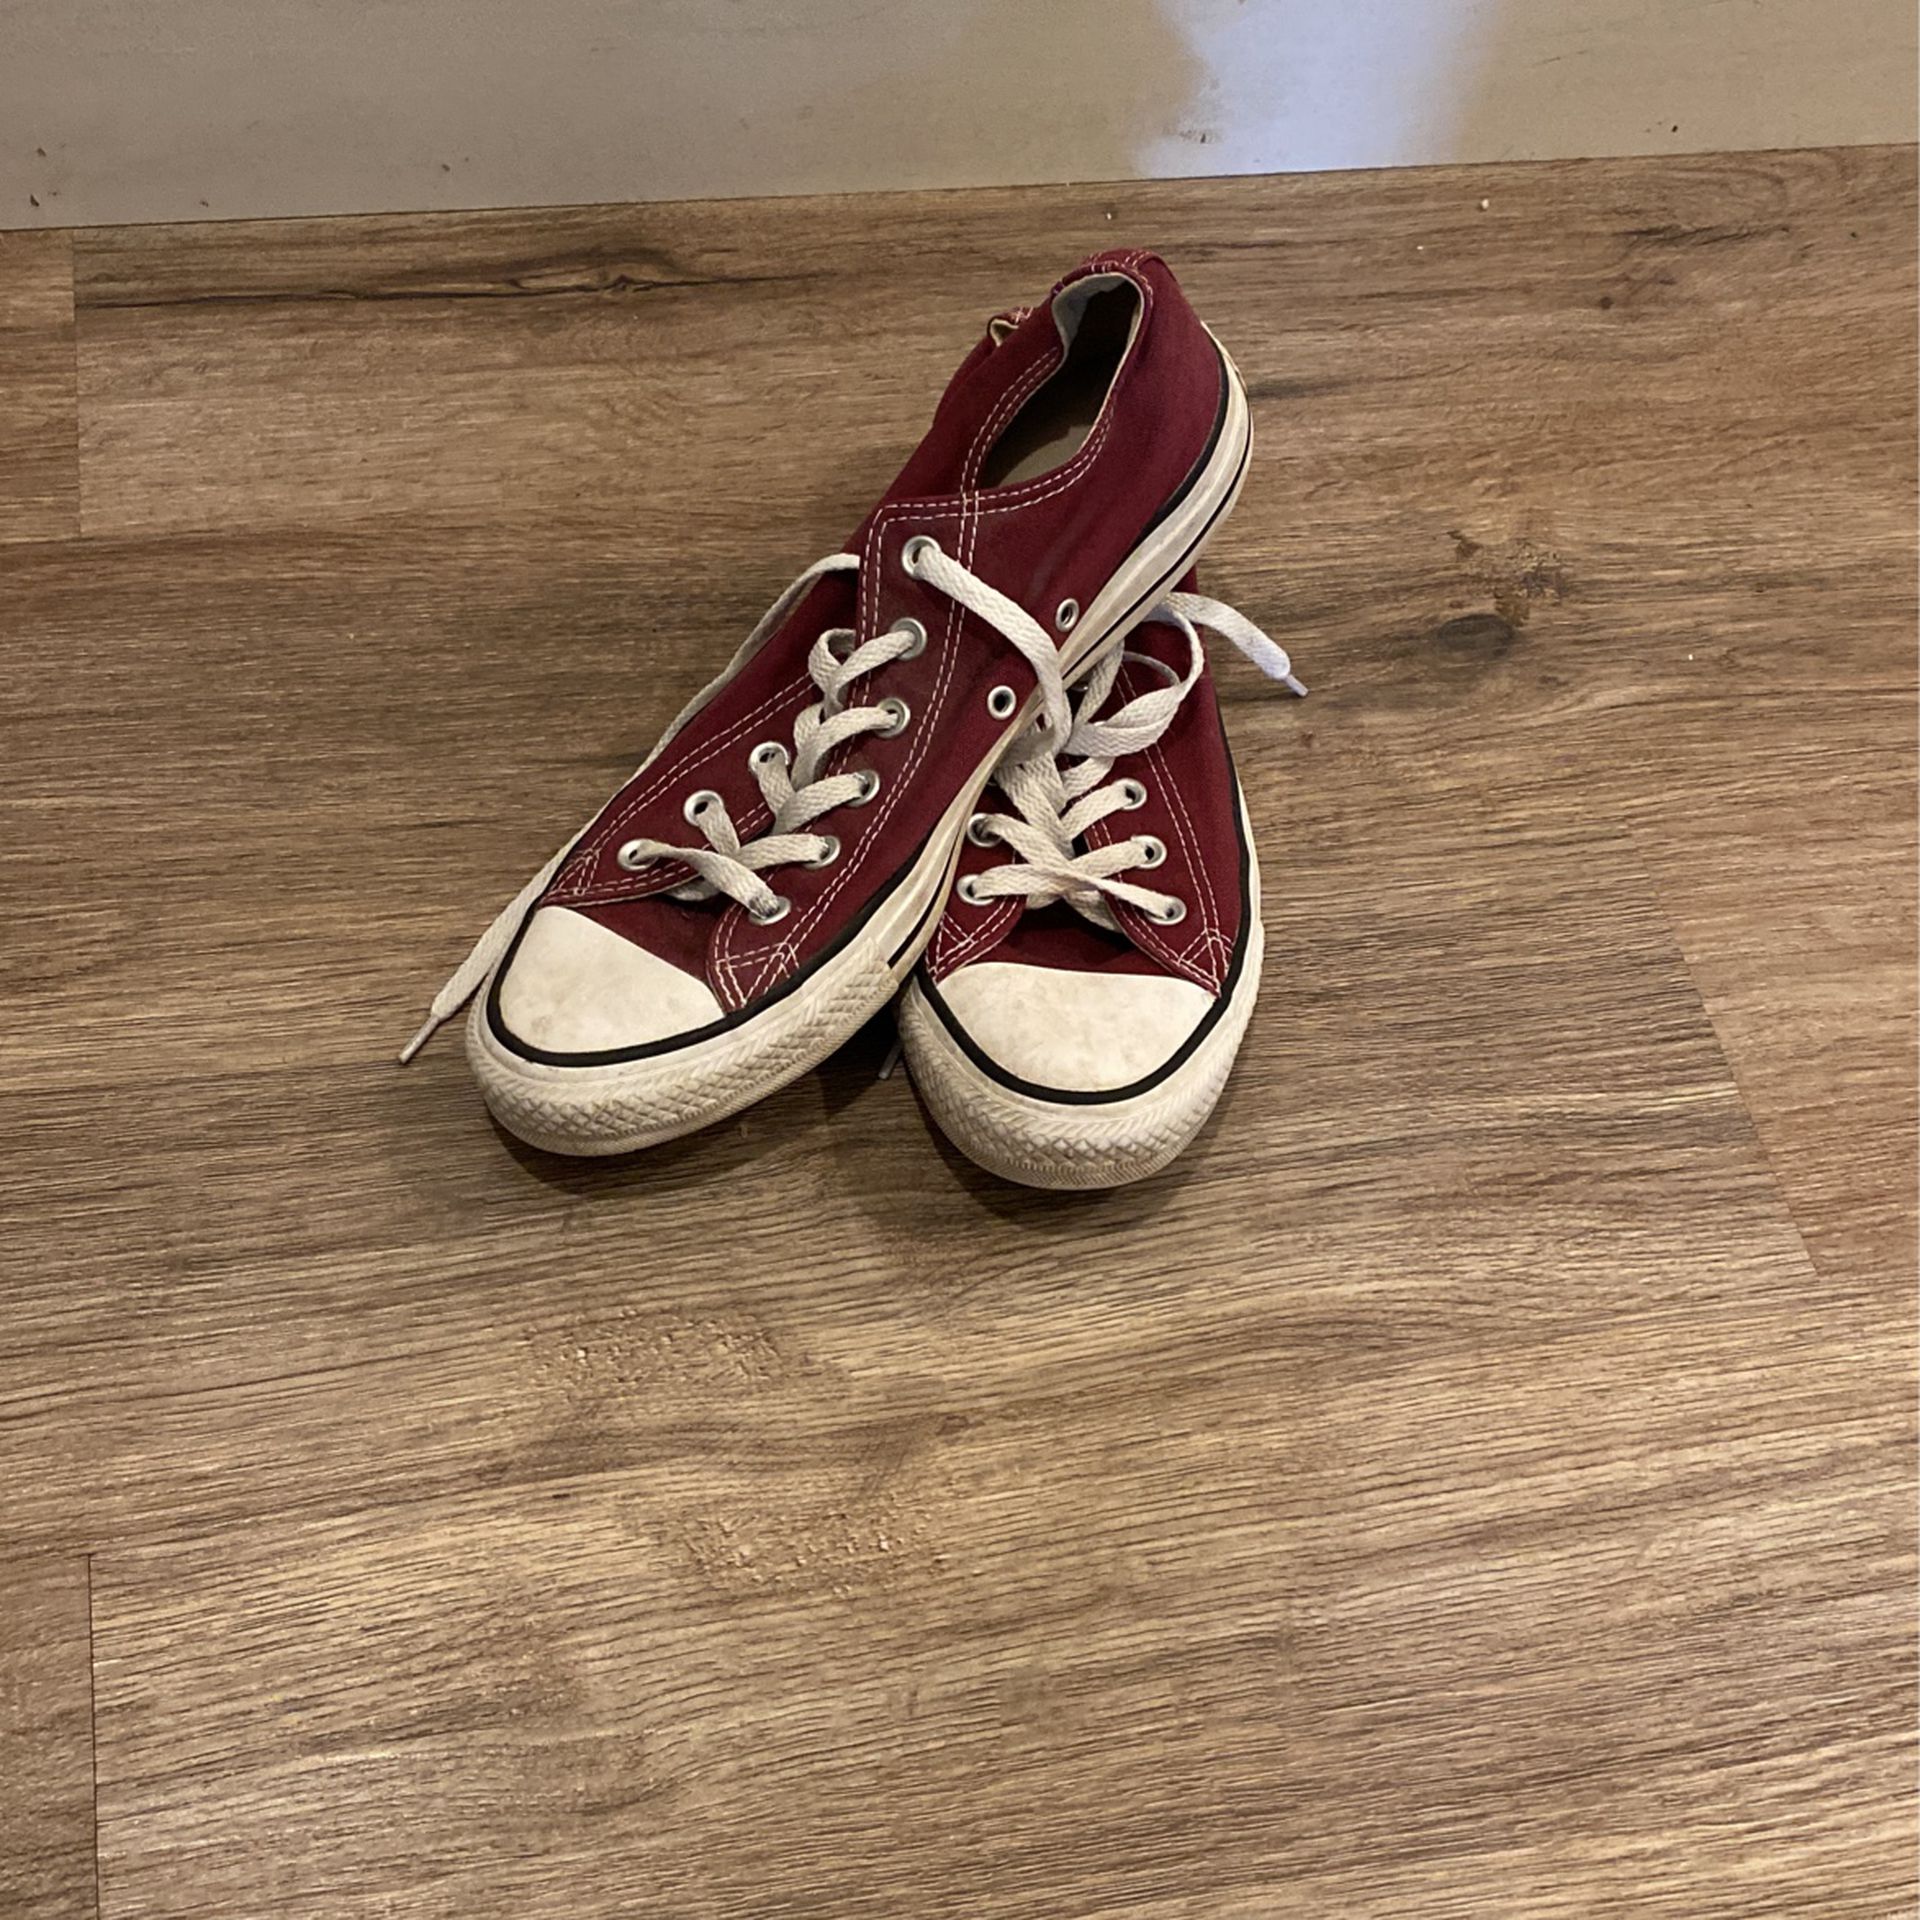 Men’s Shoes Converse, Size 8 